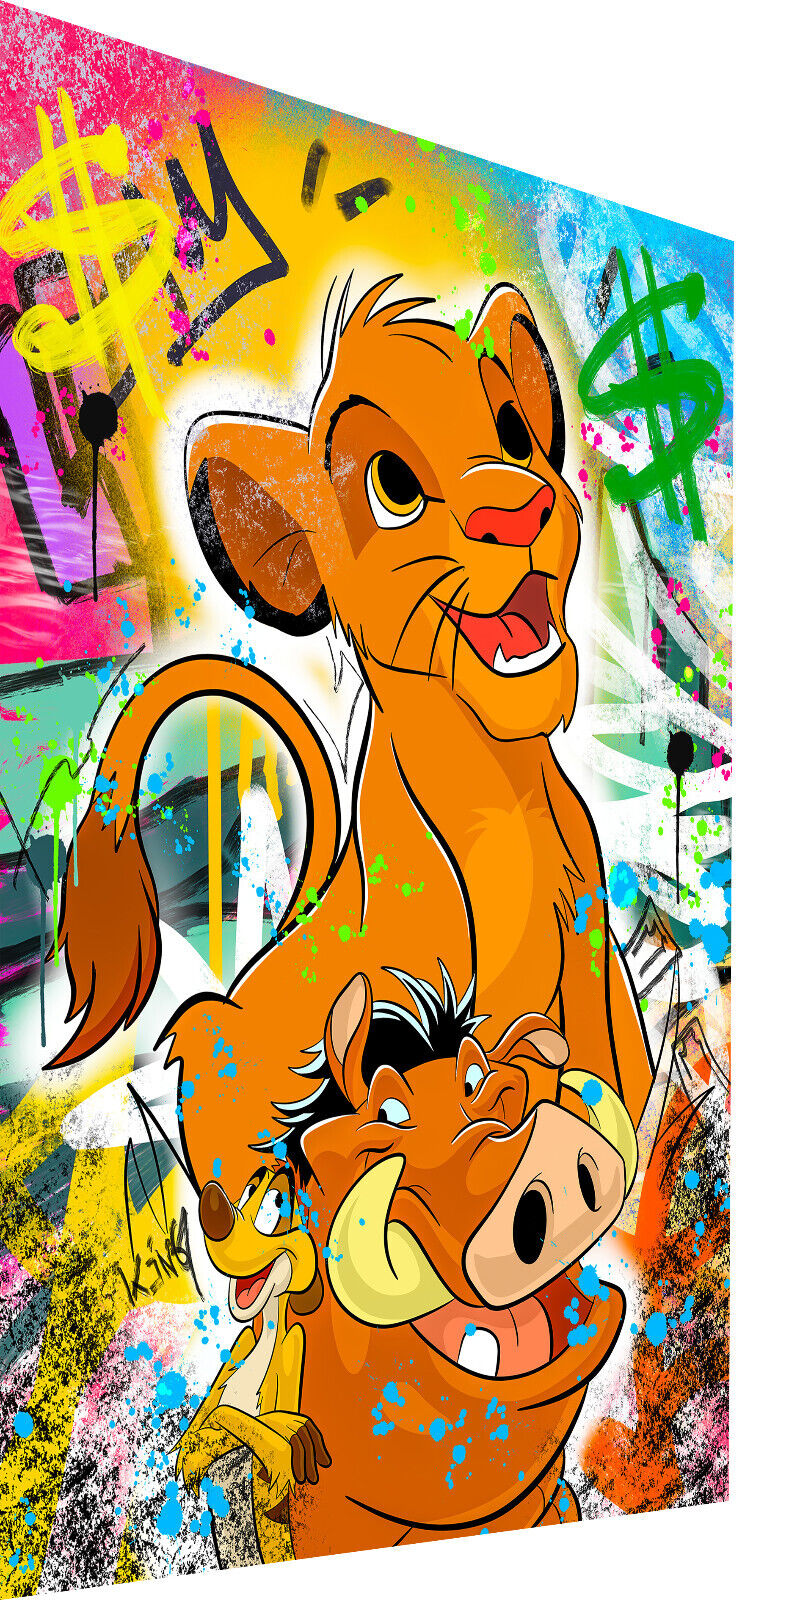 Leinwand Bilder Kun Magic -Hochwertiger PopArt Simba Pumbaa Timon Wandbilder Art Canvas –